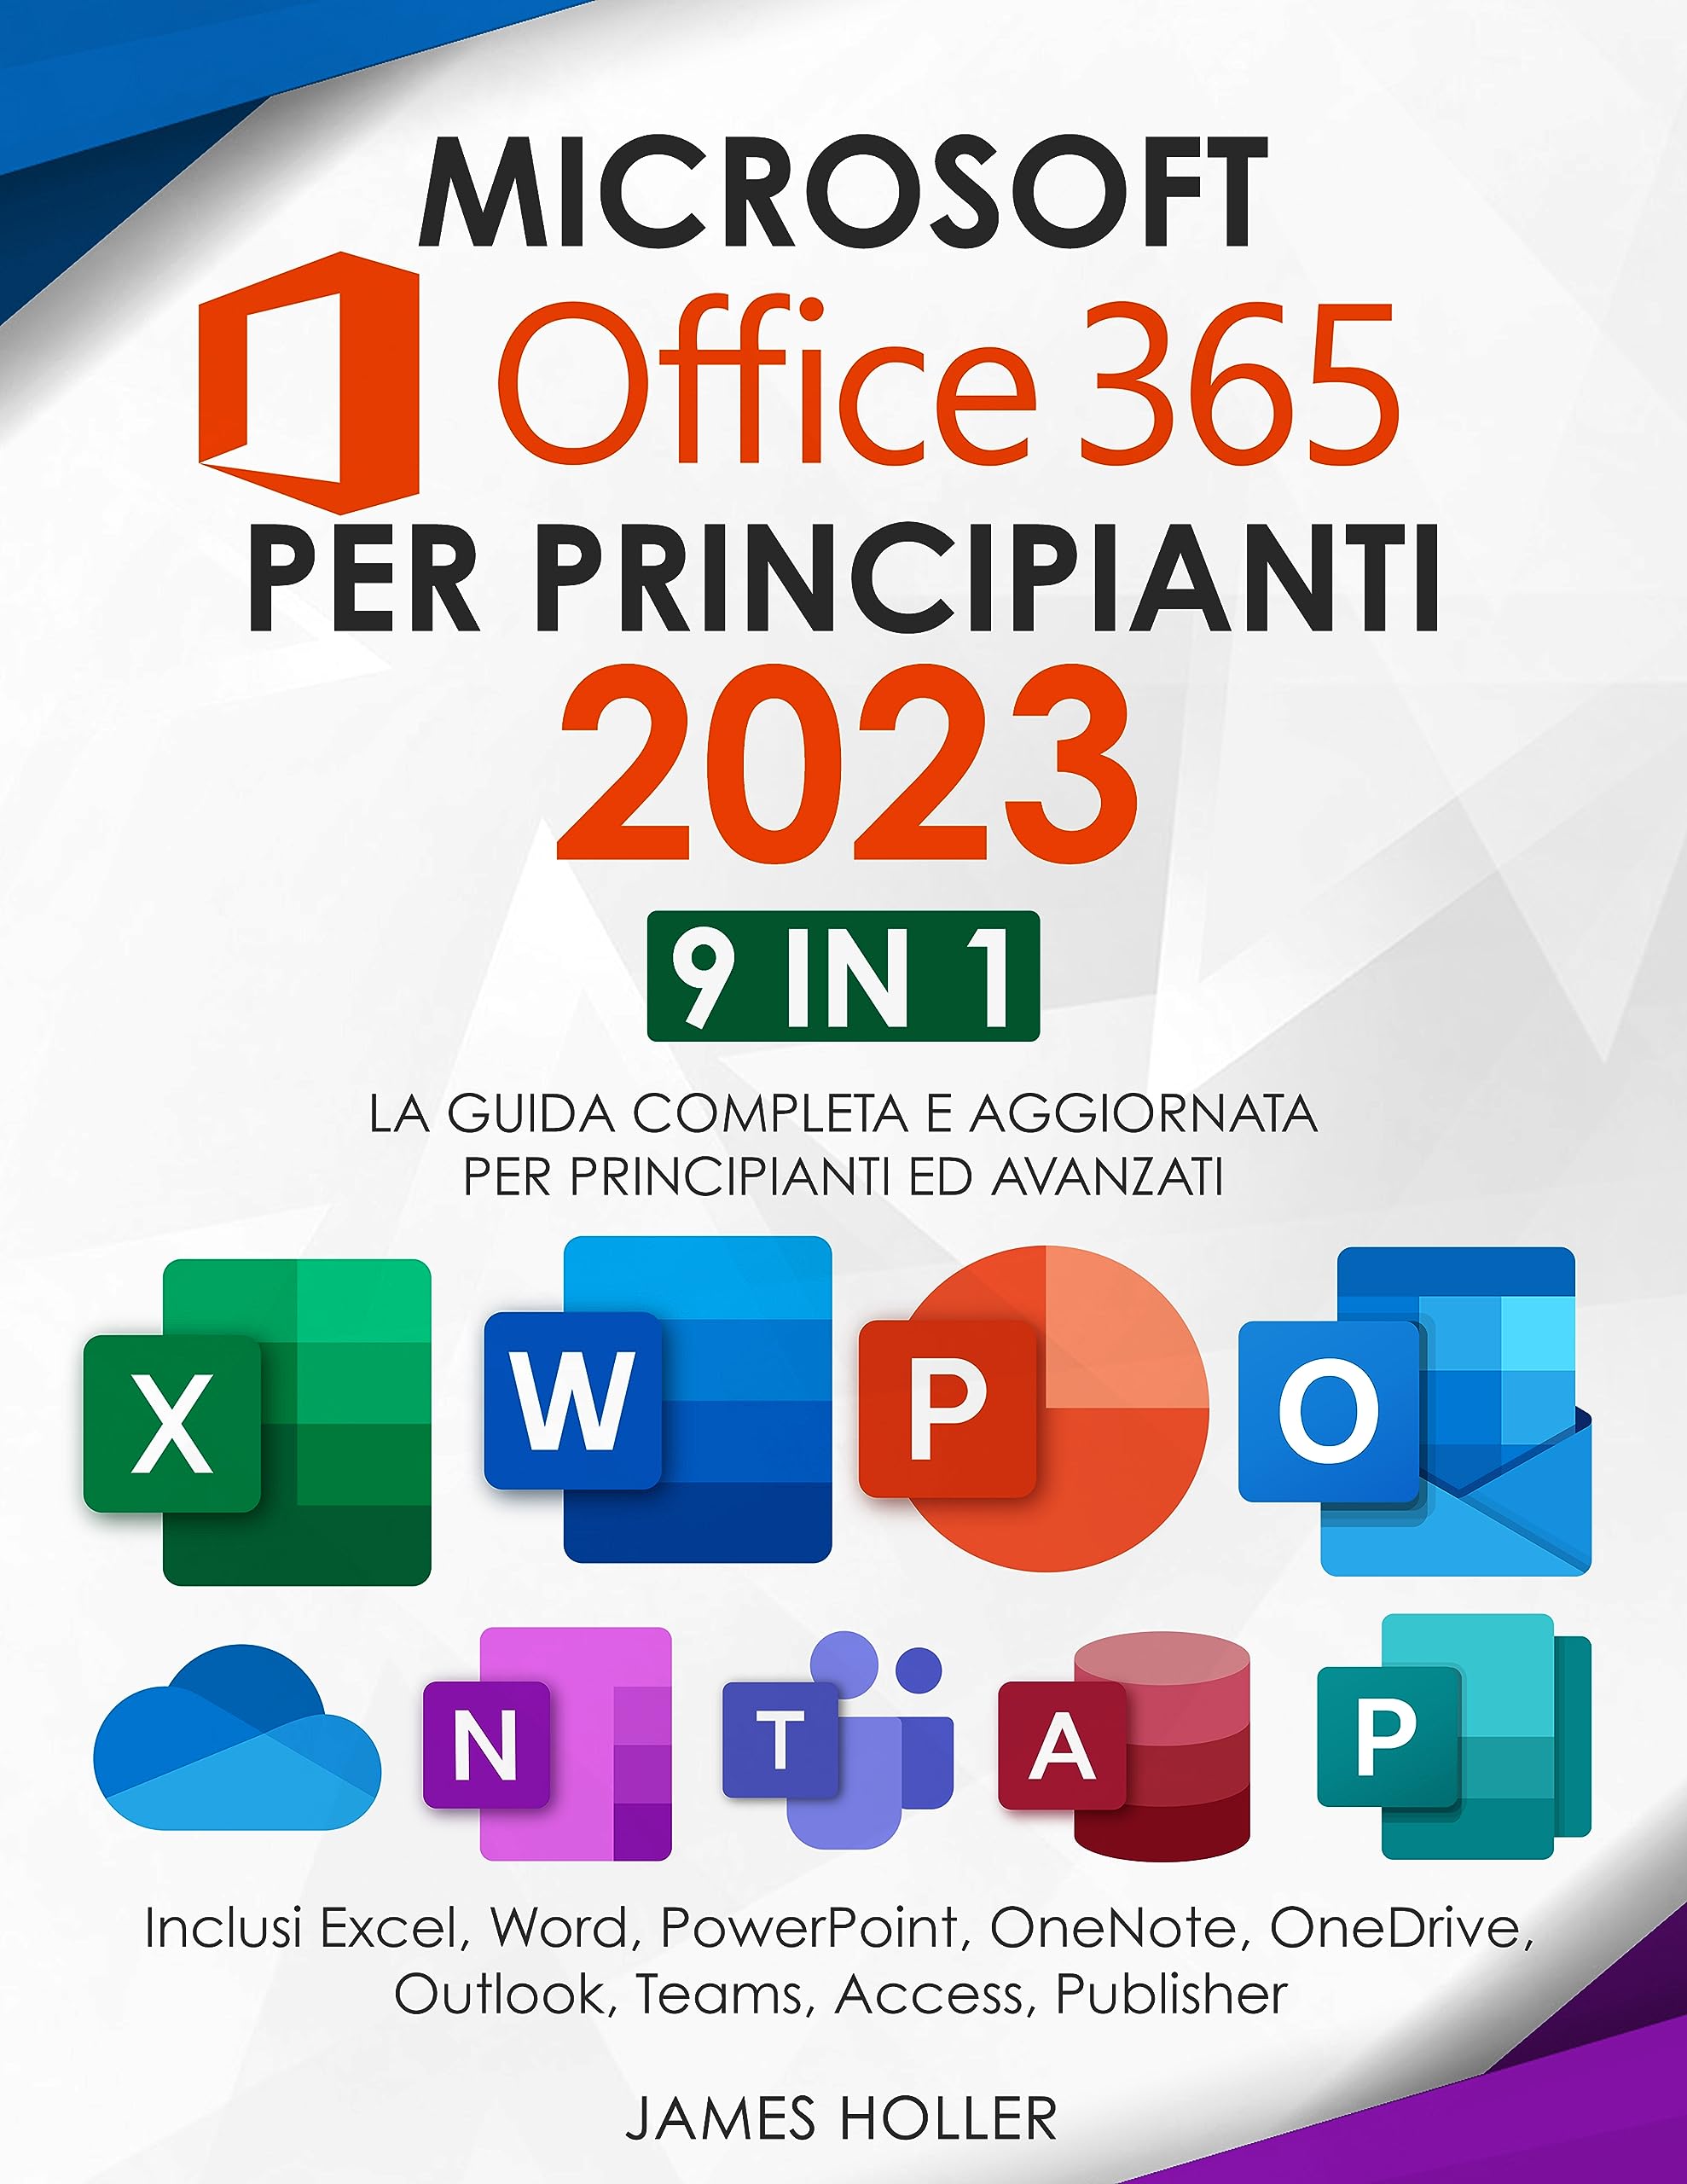 Microsoft Office 365 per Principianti 2023: [9 in 1] La Guida Completa e Aggiornata per Principianti ed Avanzati | Inclusi Excel, Word, PowerPoint, OneNote, ... Teams, Access, Publisher (Italian Edition)